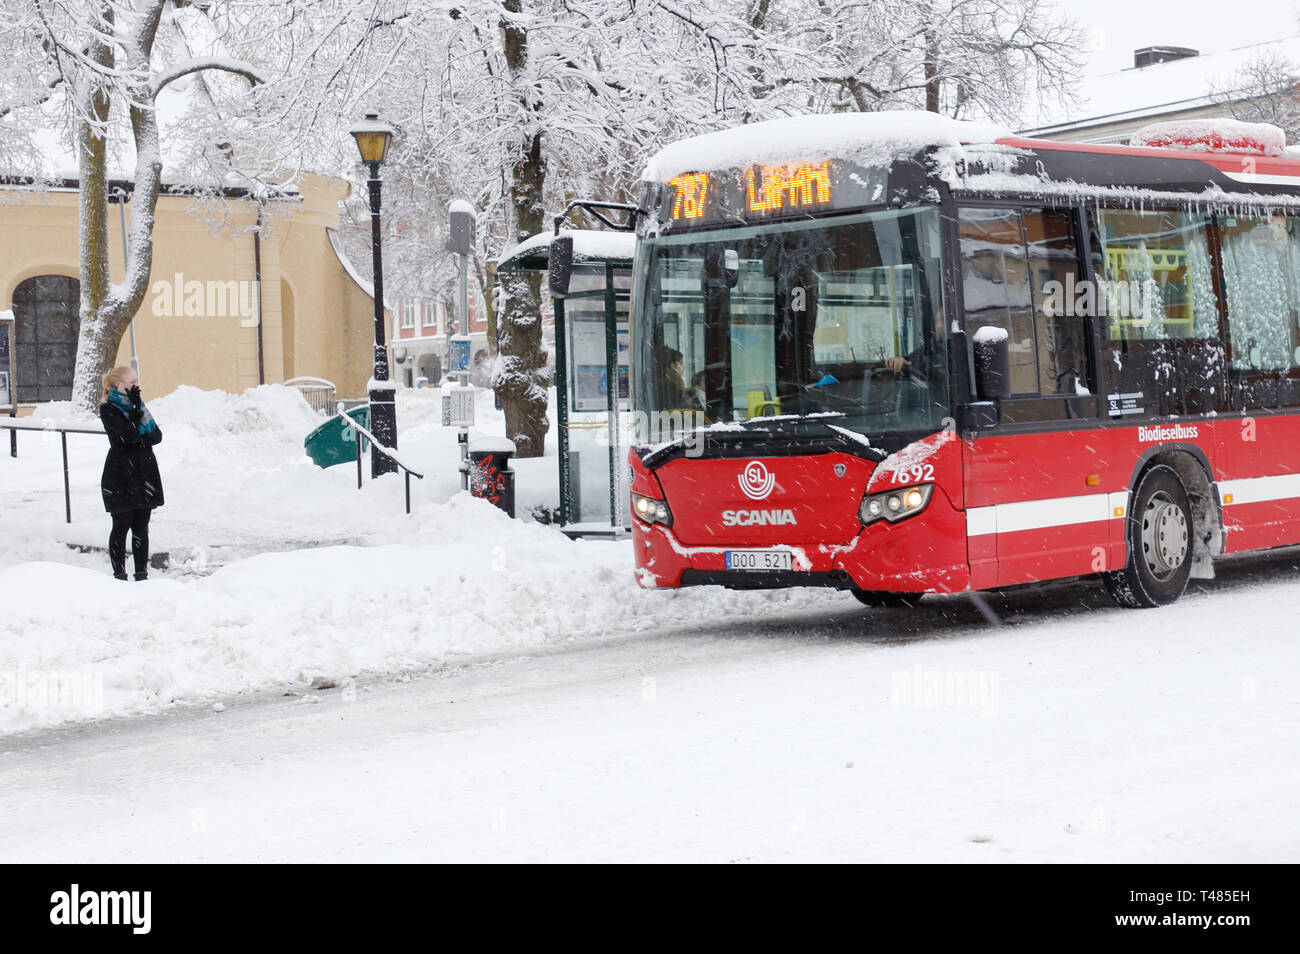 Södertälje, Schweden - Februar 3, 2019: Eine rote Öffentliche Verkehrsmittel Bus Service für SL in Zeile 787 bei einem Schneefall in der Nähe von der Hauptplatz der Stadt. Stockfoto